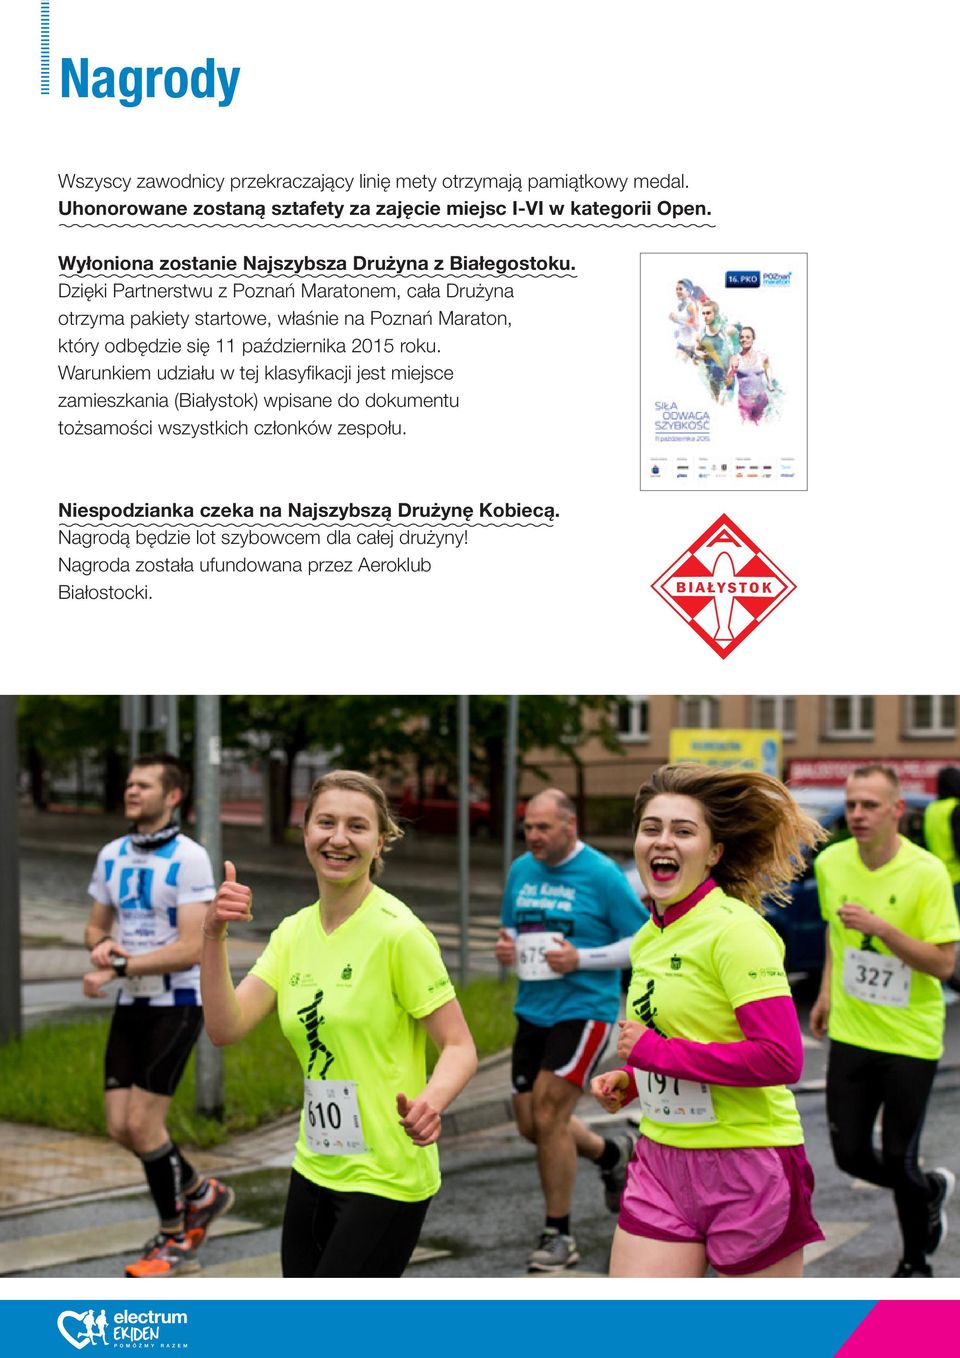 Dzięki Partnerstwu z Poznań Maratonem, cała Drużyna otrzyma pakiety startowe, właśnie na Poznań Maraton, który odbędzie się 11 października 2015 roku.